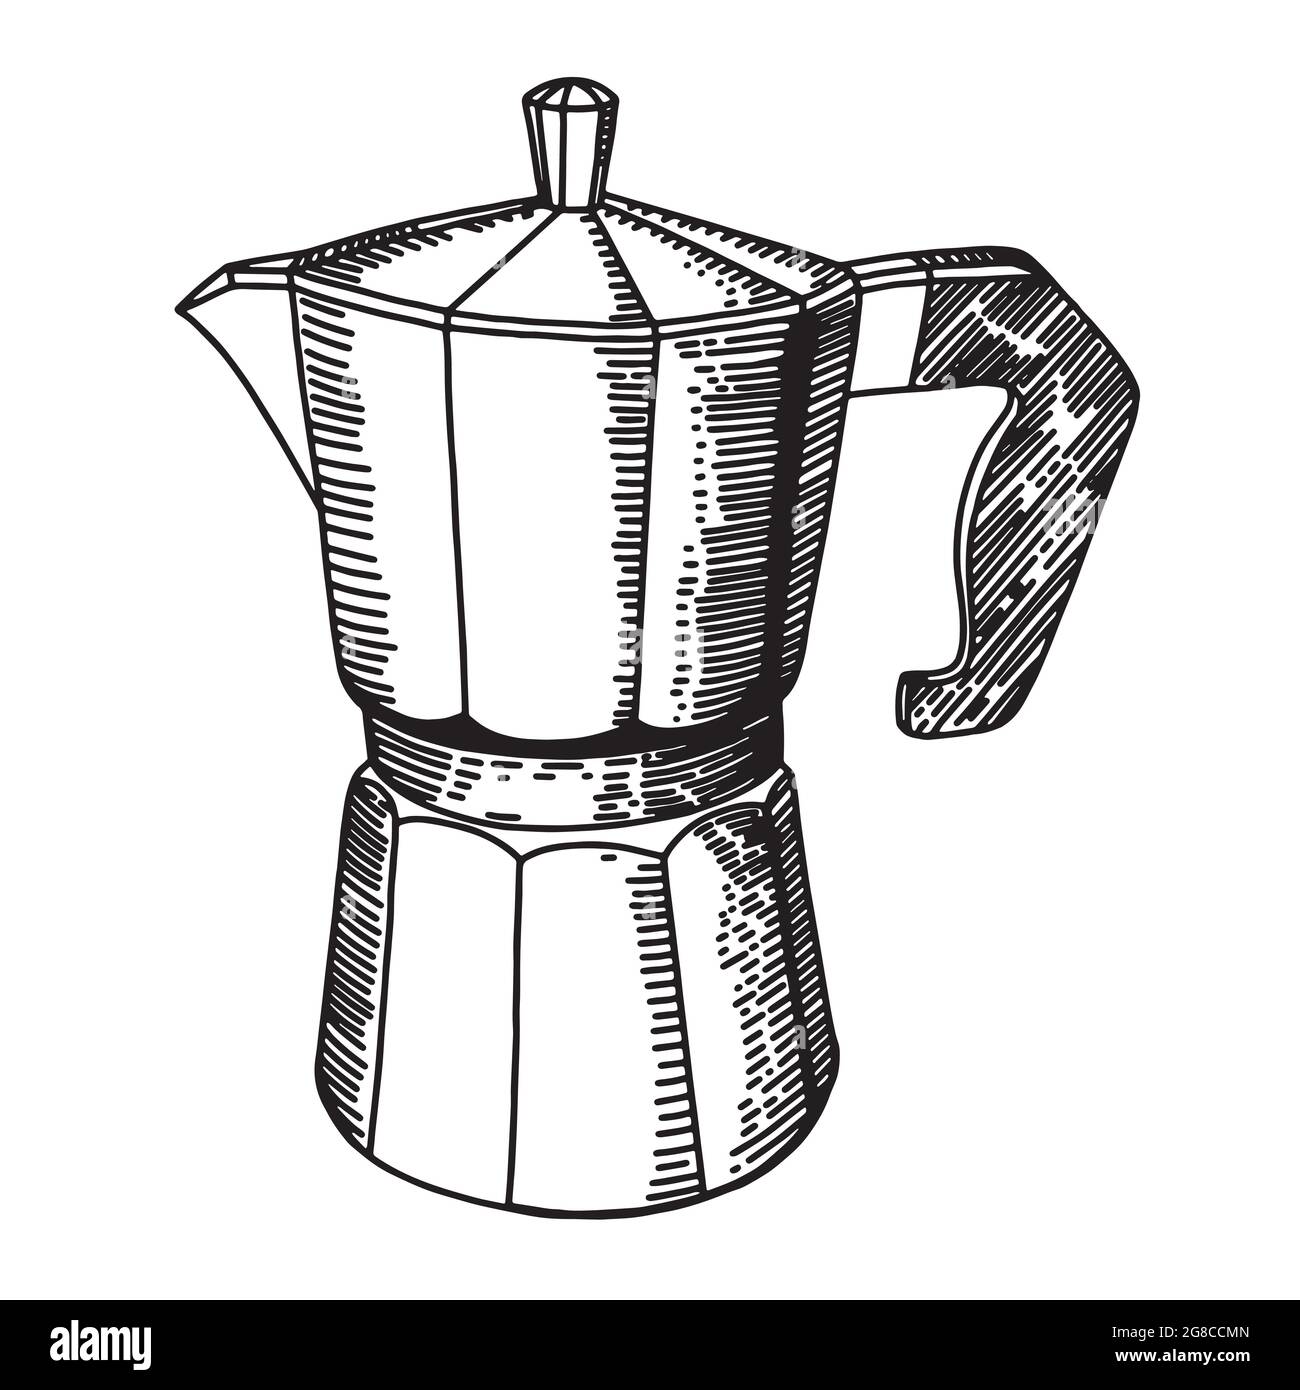 Diseño Retro De La Máquina De La Cafetera O Del Café En La Representación  De La Mesa De La Cocina En 3d Stock de ilustración - Ilustración de  escritorio, equipo: 201998109